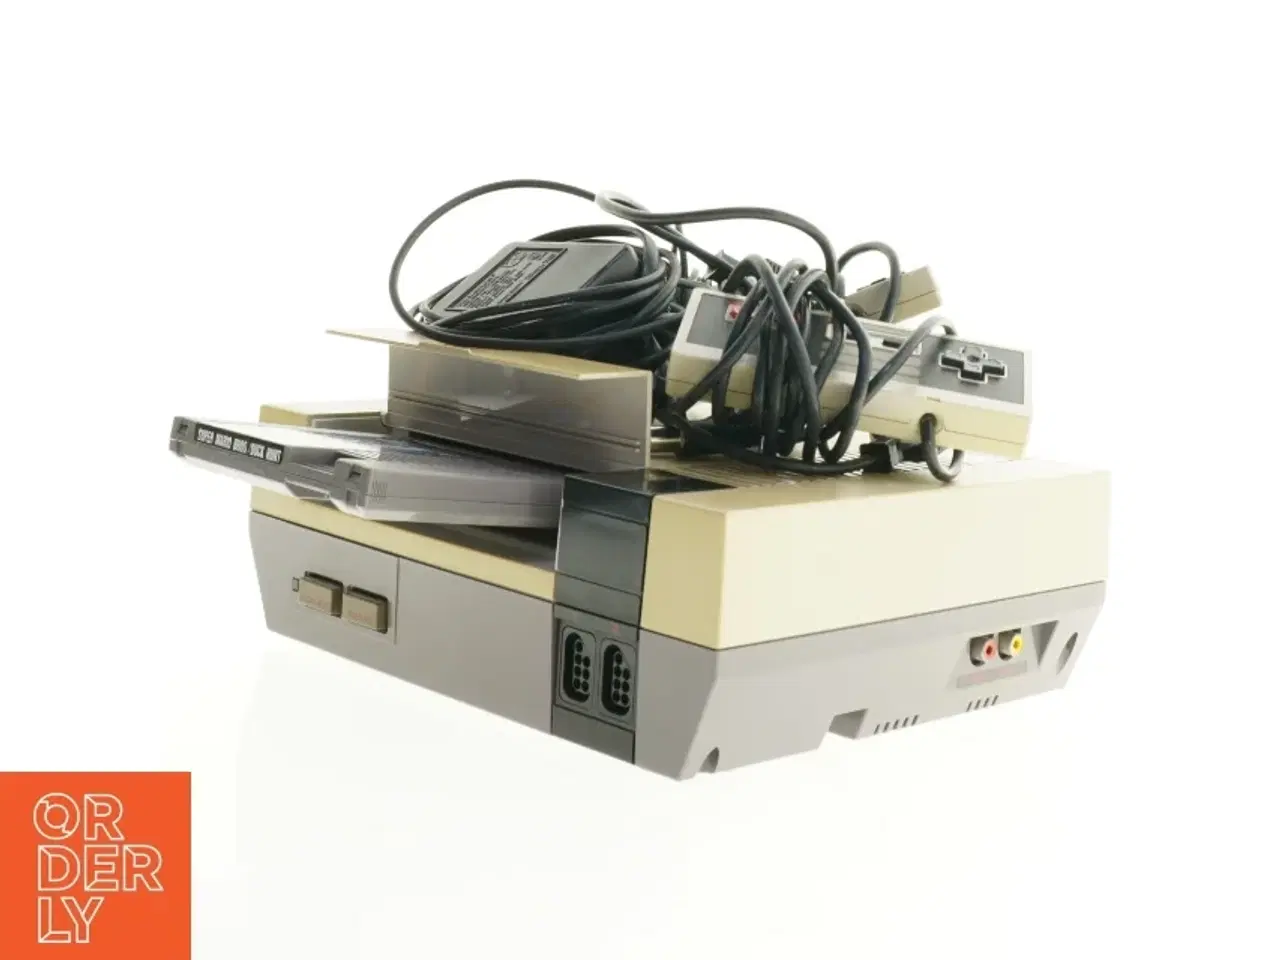 Billede 4 - Nintendo Entertainment System med tilbehør fra Nintendo (str. 26 x 20 x 9 cm)